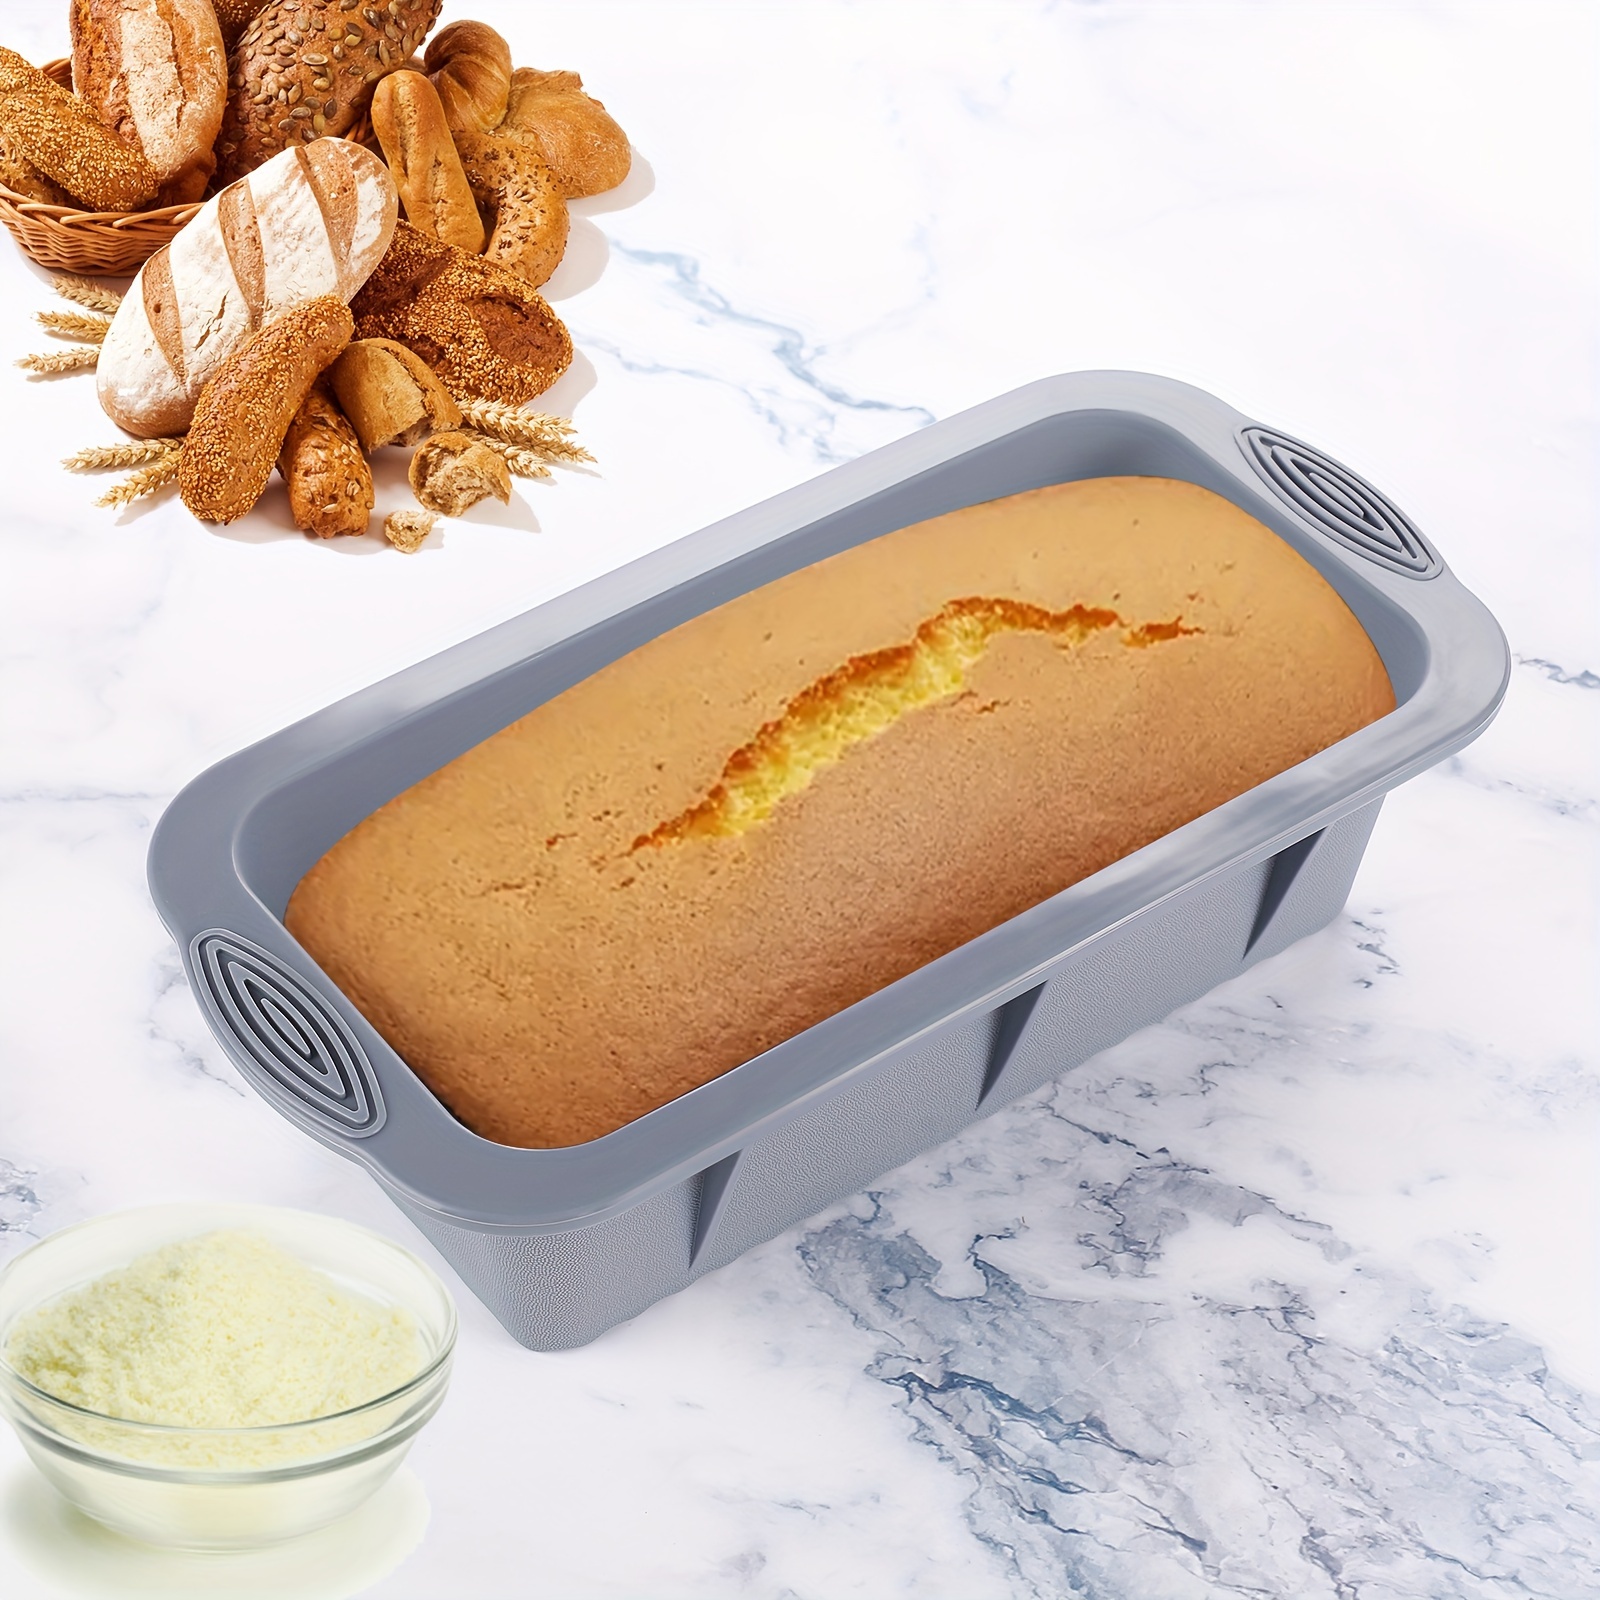 30pcs Nonstick Silicone Bakeware Set With Baking Pan, Silicone Cake Molds,  Baking Sheet, Donut Pan, Silicone Muffin Pan,Cake Pan, And 24 Pack Silicone